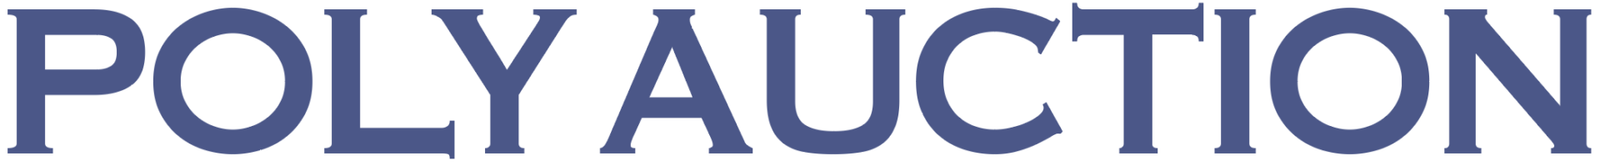 保利 logo